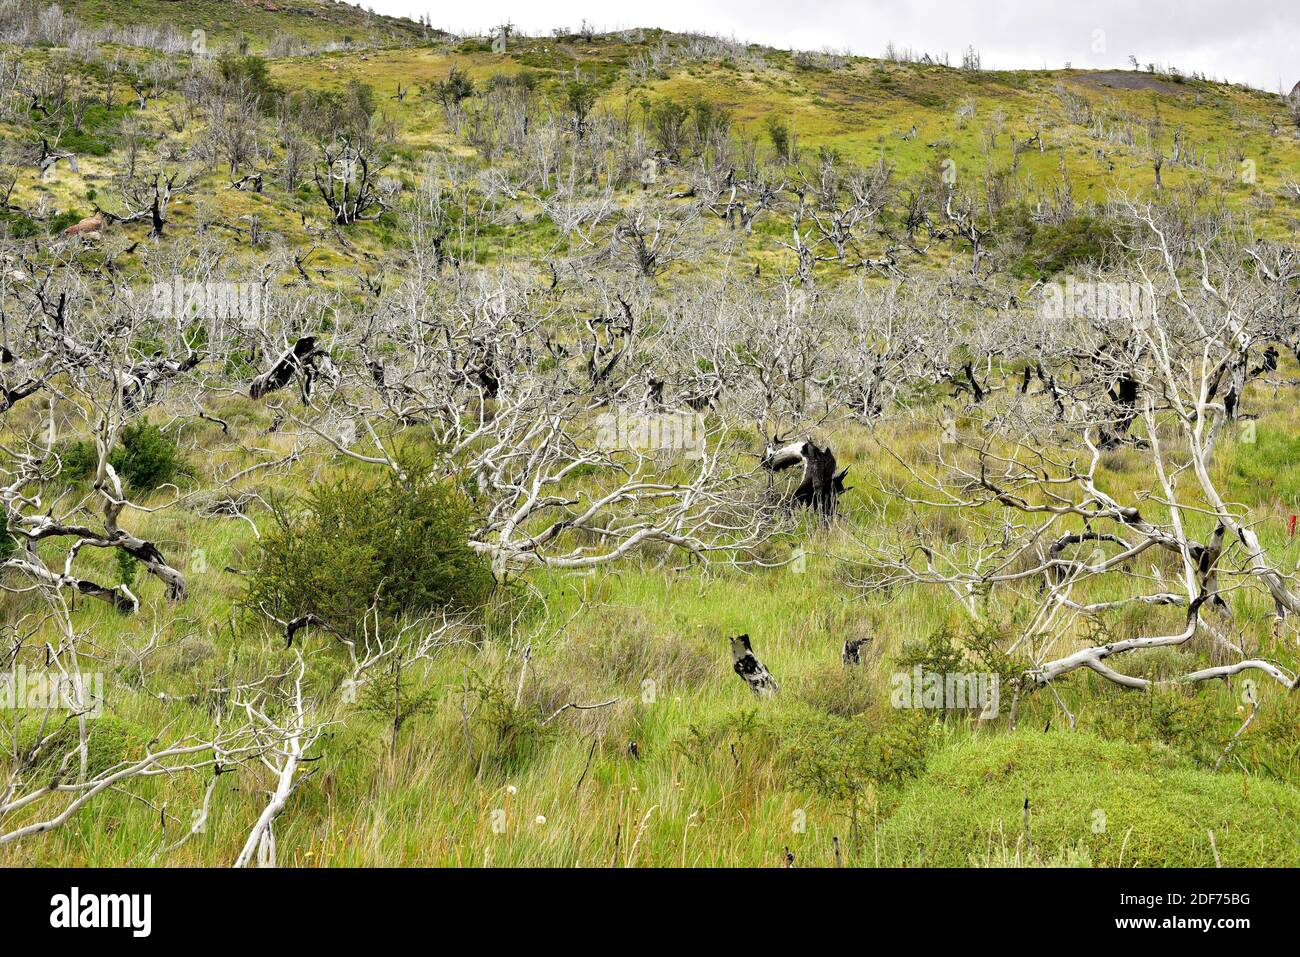 Il faggio lenga, haya austral o lenga (Nothofagus pumilio) è un albero deciduo originario delle Ande meridionali del Cile e dell'Argentina. Foresta bruciata. Questo Foto Stock